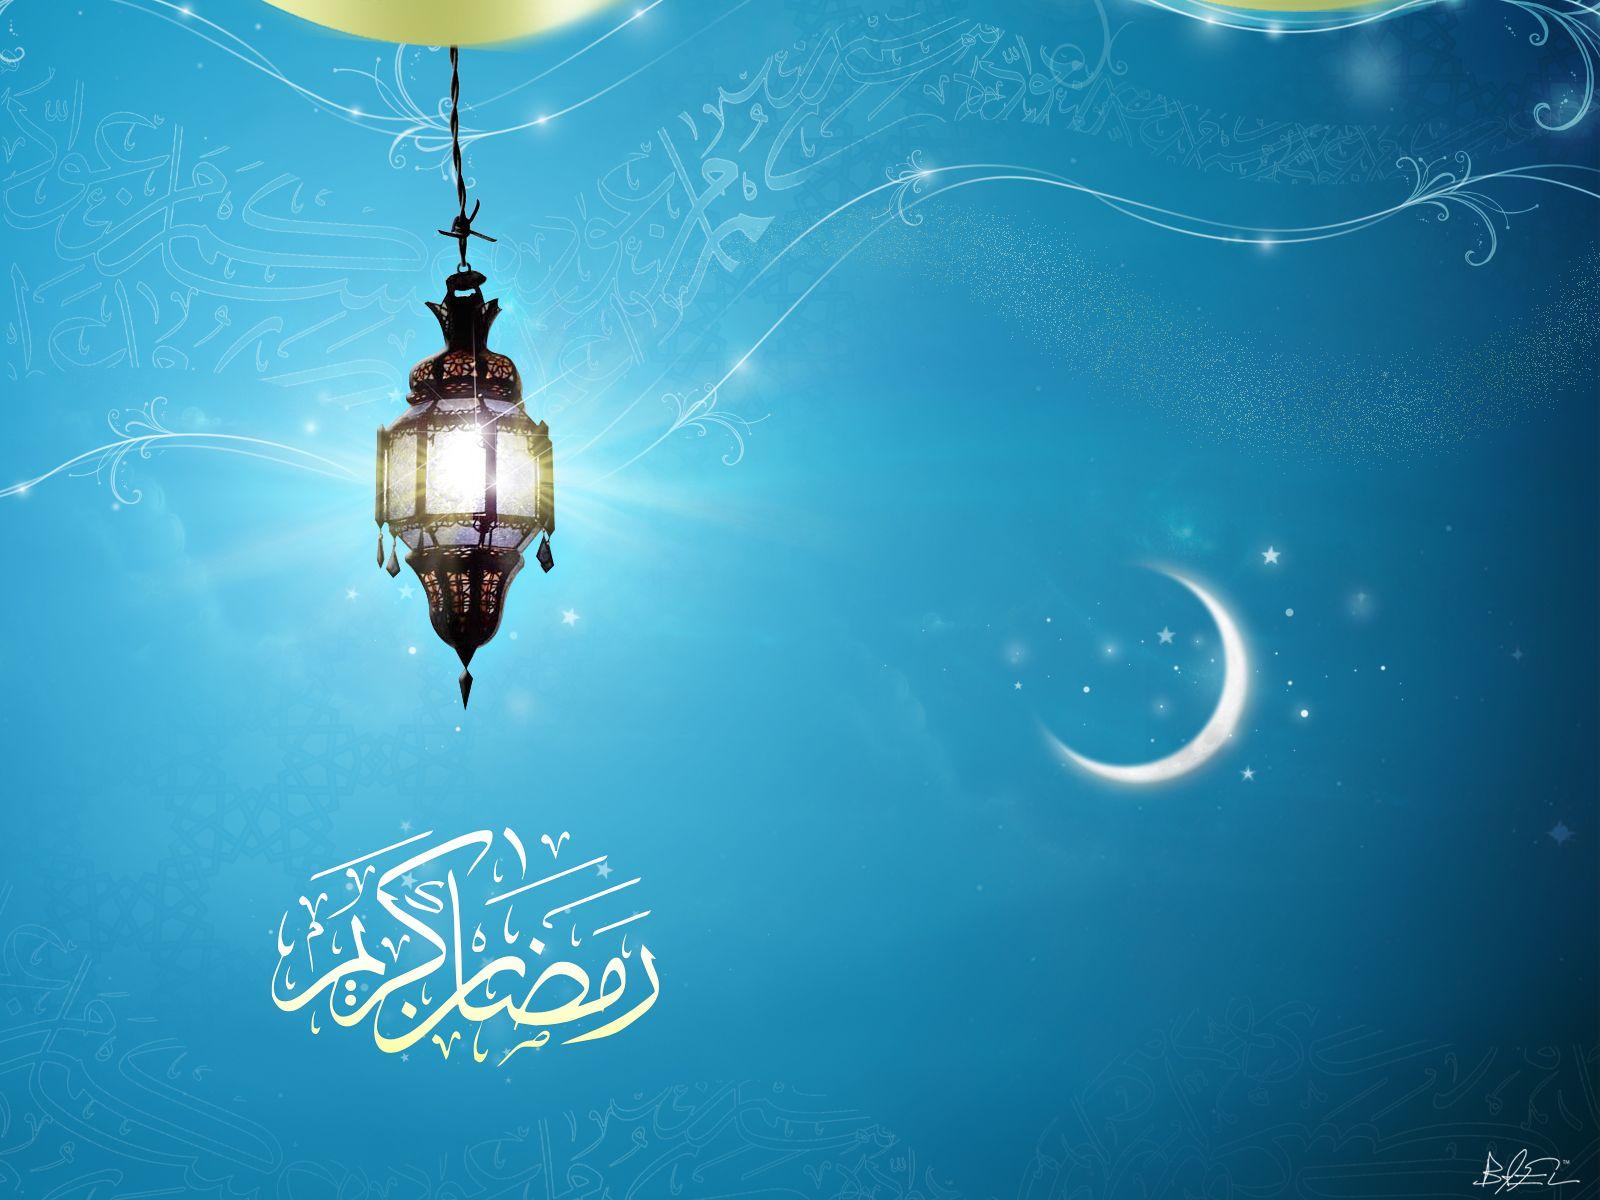 Ramadan Wallpaper Images - Free Download on Freepik